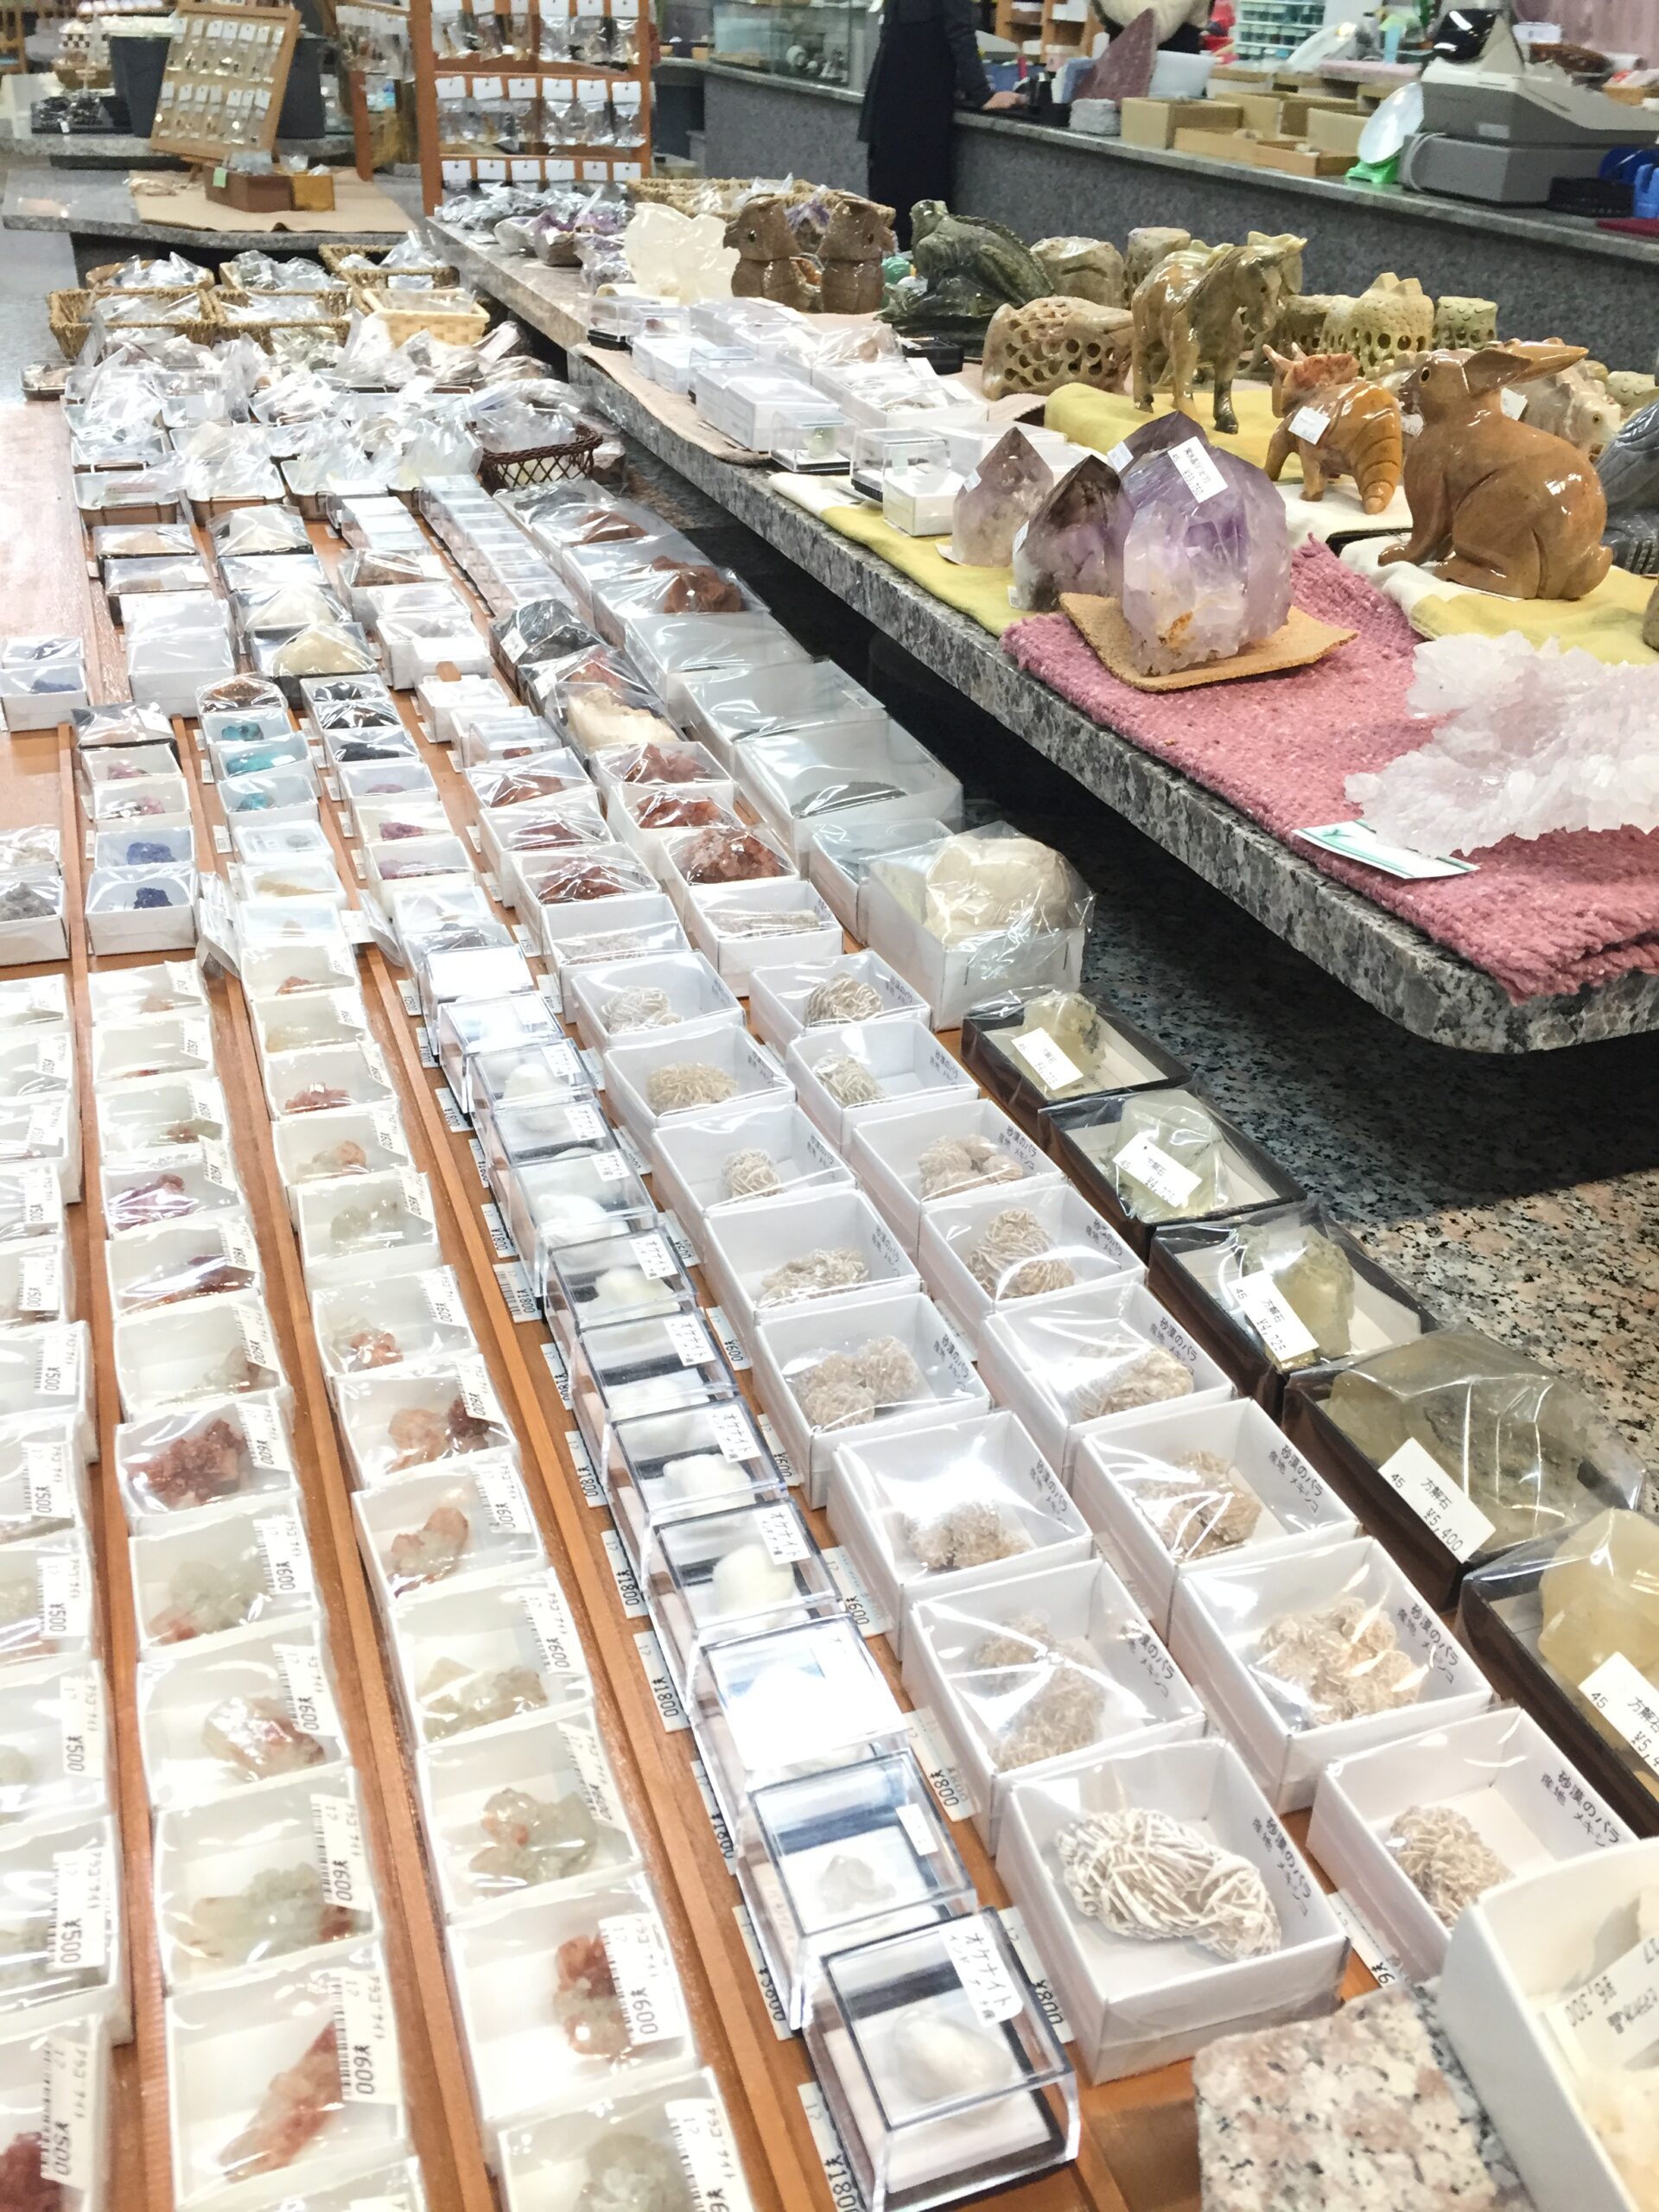 (ﾐｭｰｼﾞｱﾑｼｮｯﾌﾟ 石の売店)  めずらしい鉱物・宝石・化石 を展示 販売